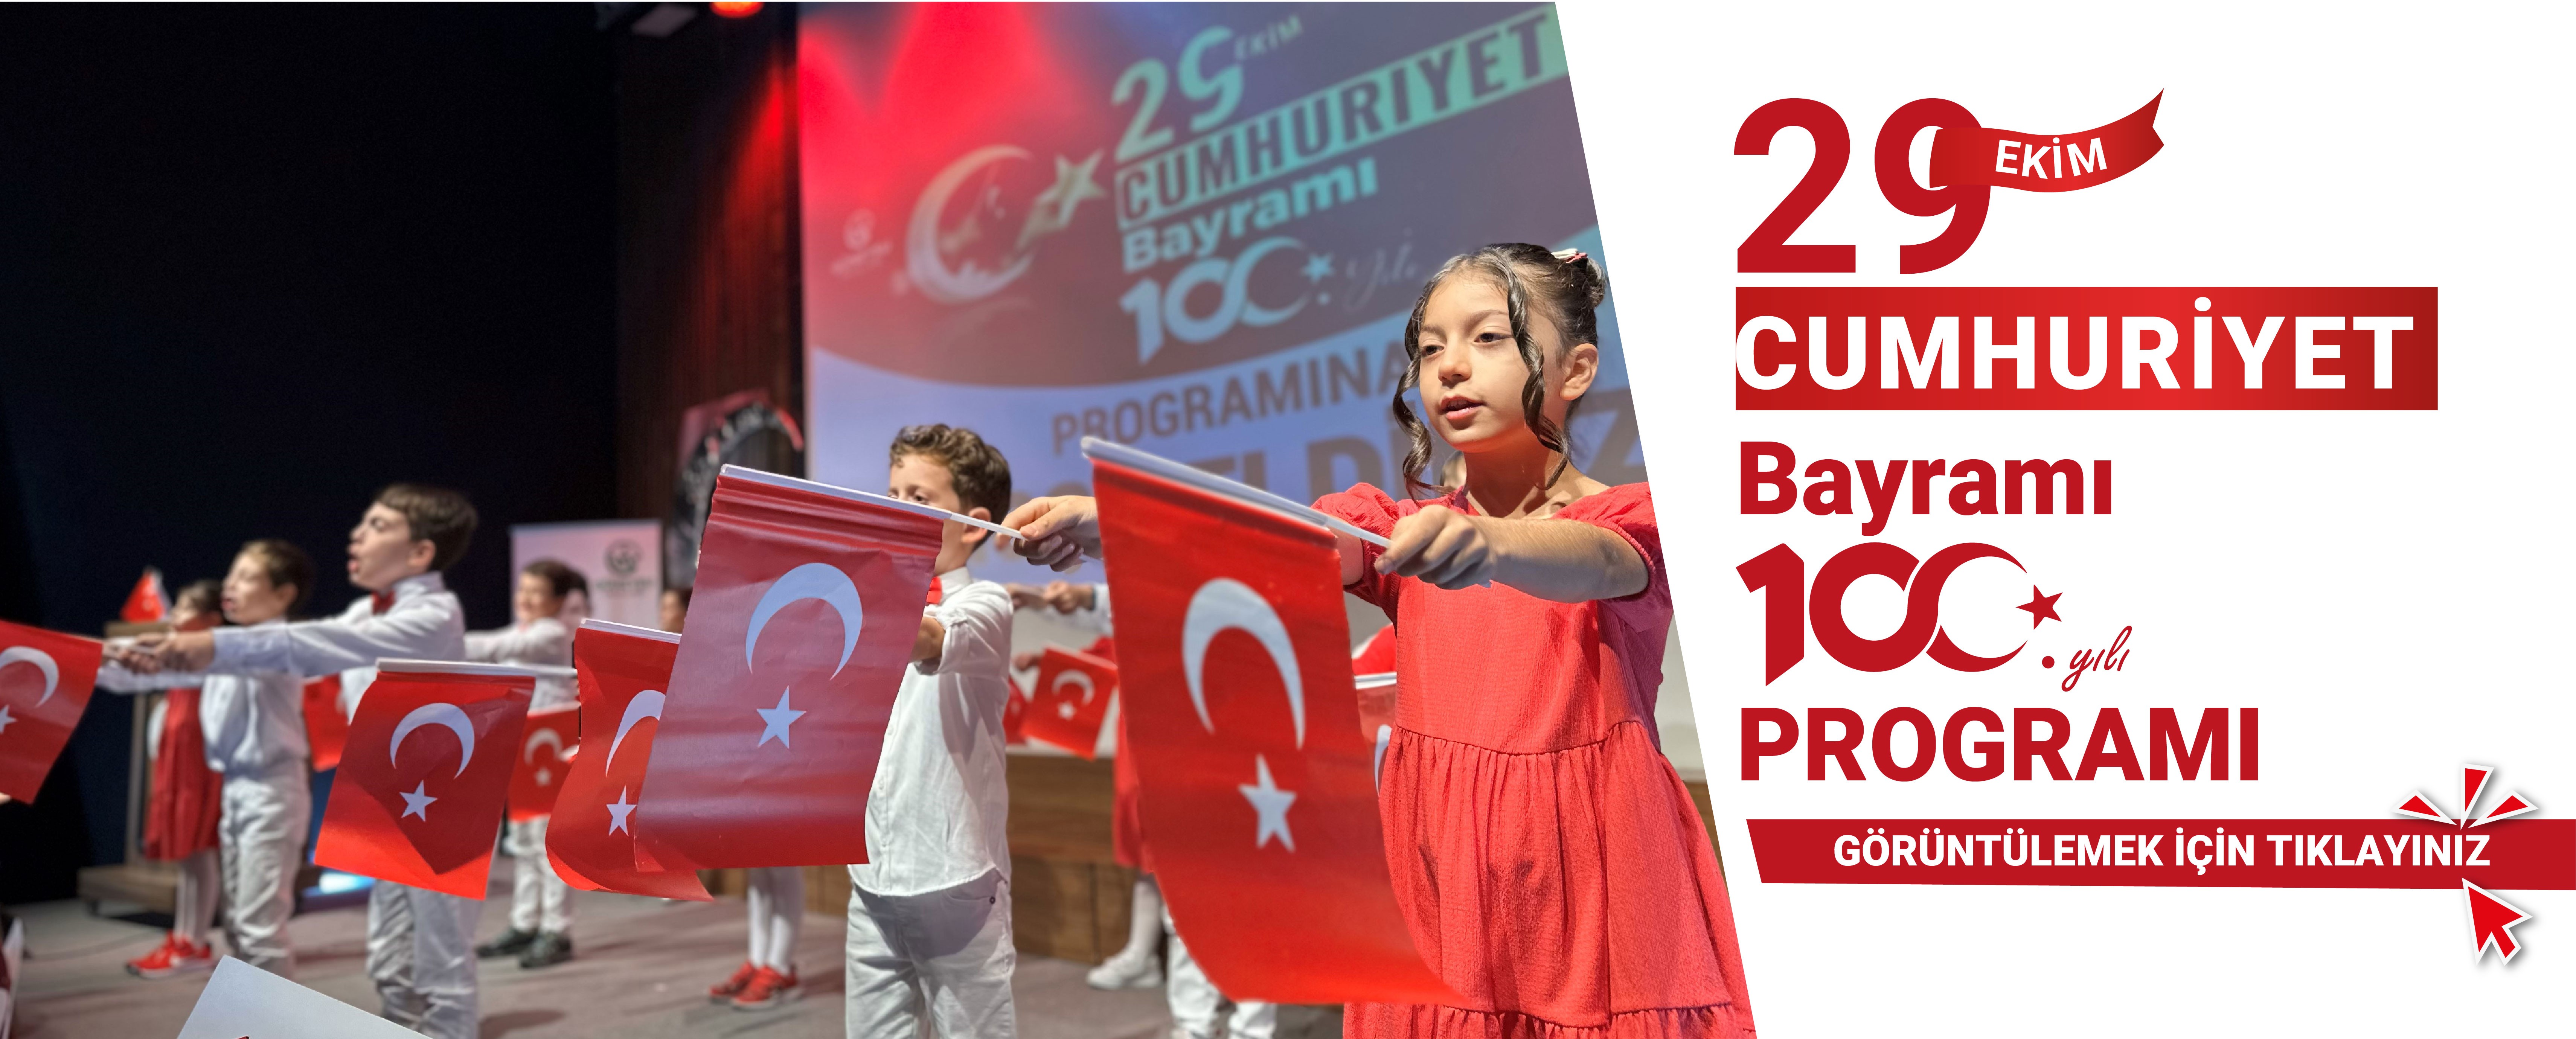 https://www.guneysuokullari.com/p/29-ekim-cumhuriyet-bayrami-100.-yil-kutlamamiz/95